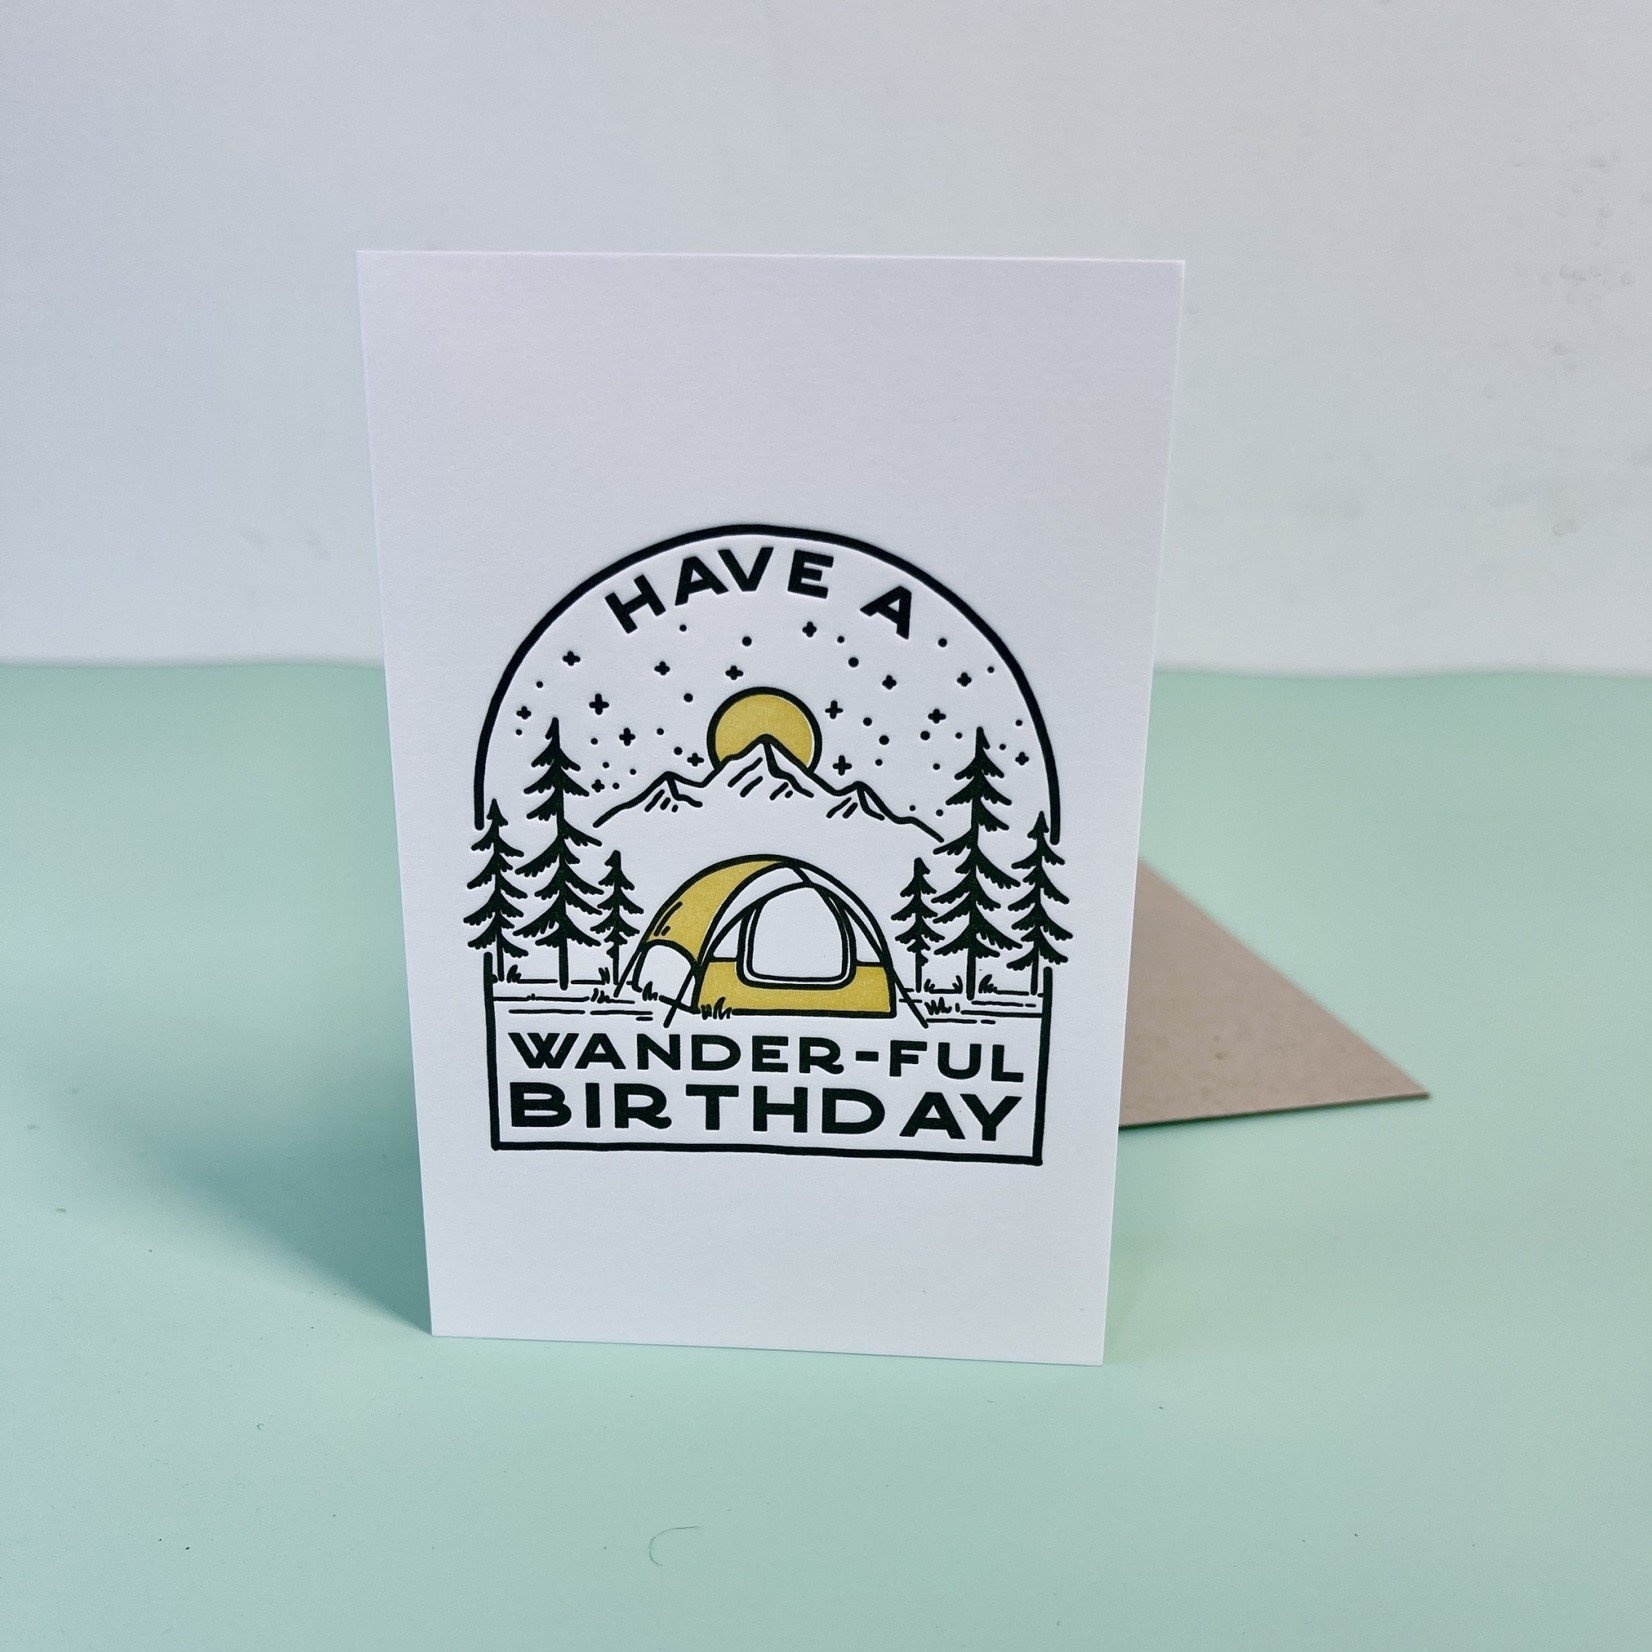 Wander-Ful Birthday Card